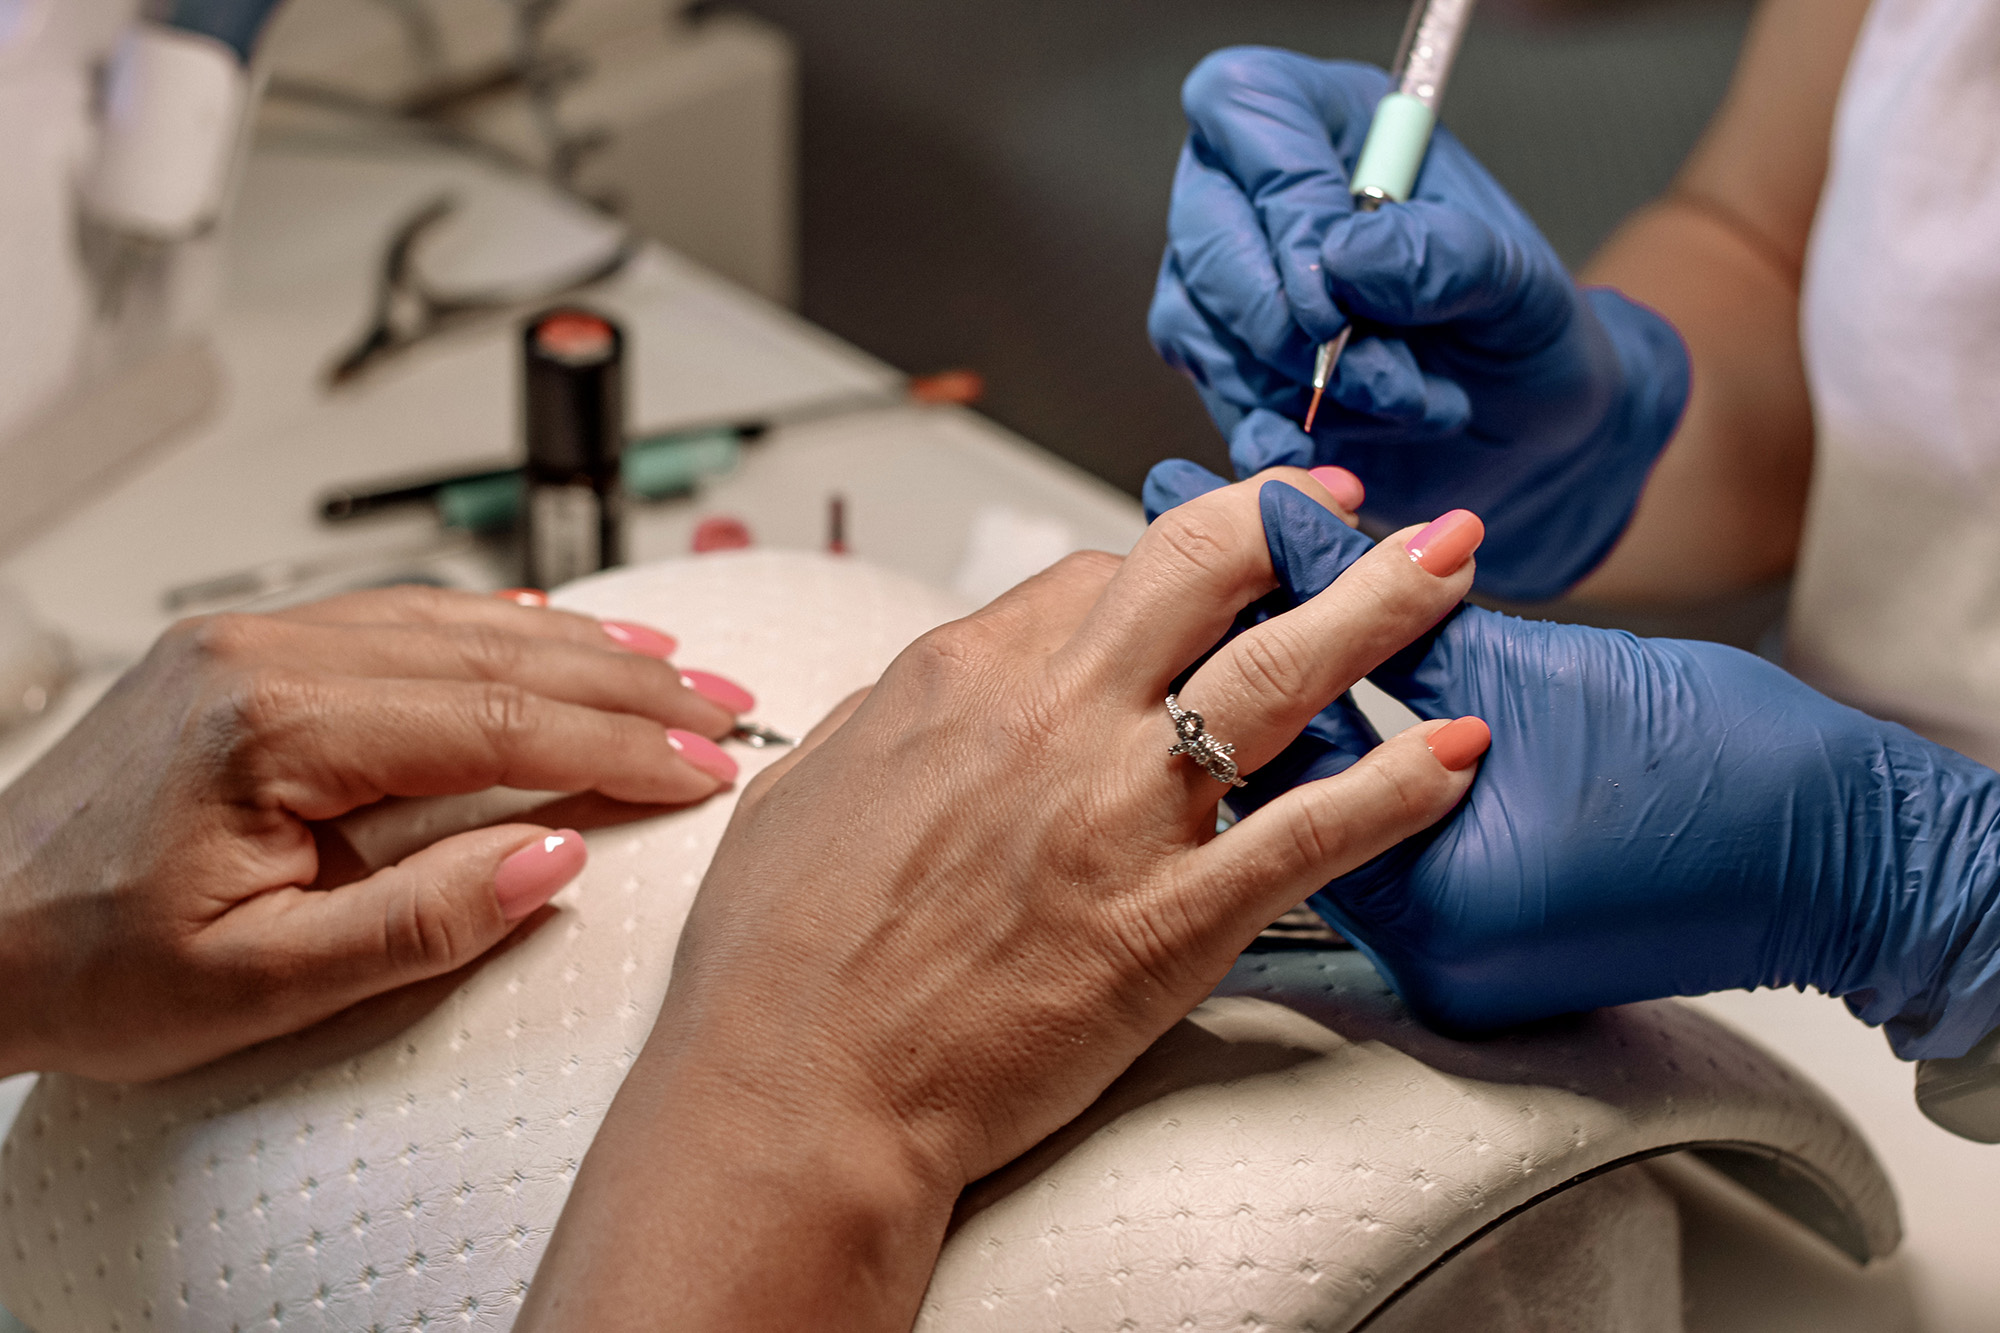 serpresur - Medidas preventivas en la manicura y en el tratamiento de pestañas